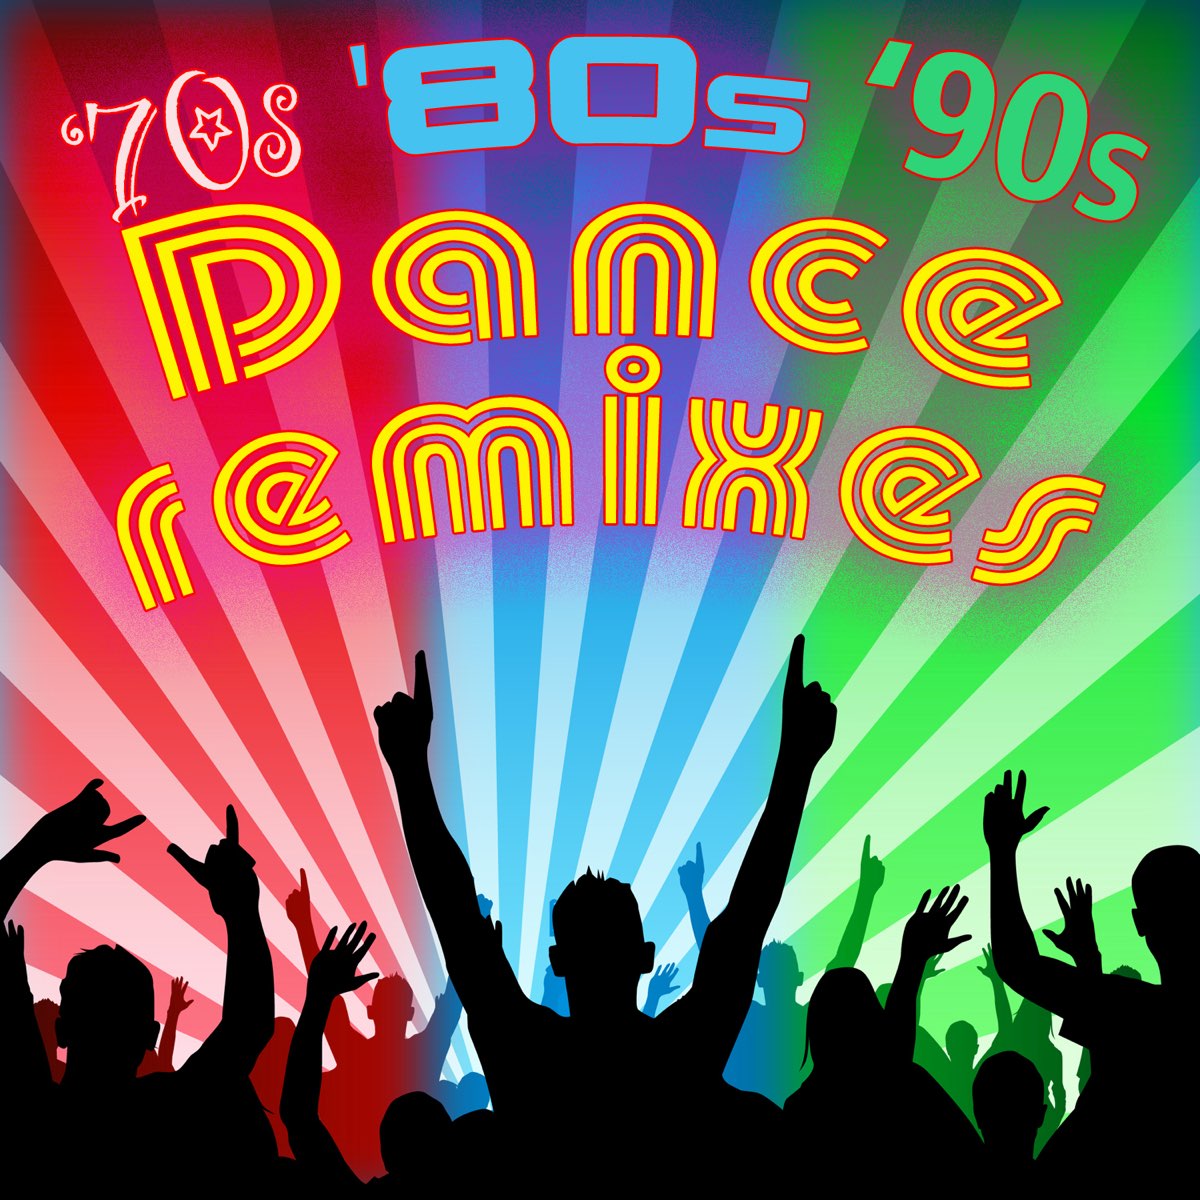 Dance 90s. Funk Music 70's. Let's Dance картинка. Rise up Club. 90 песни ремикс танцевальные